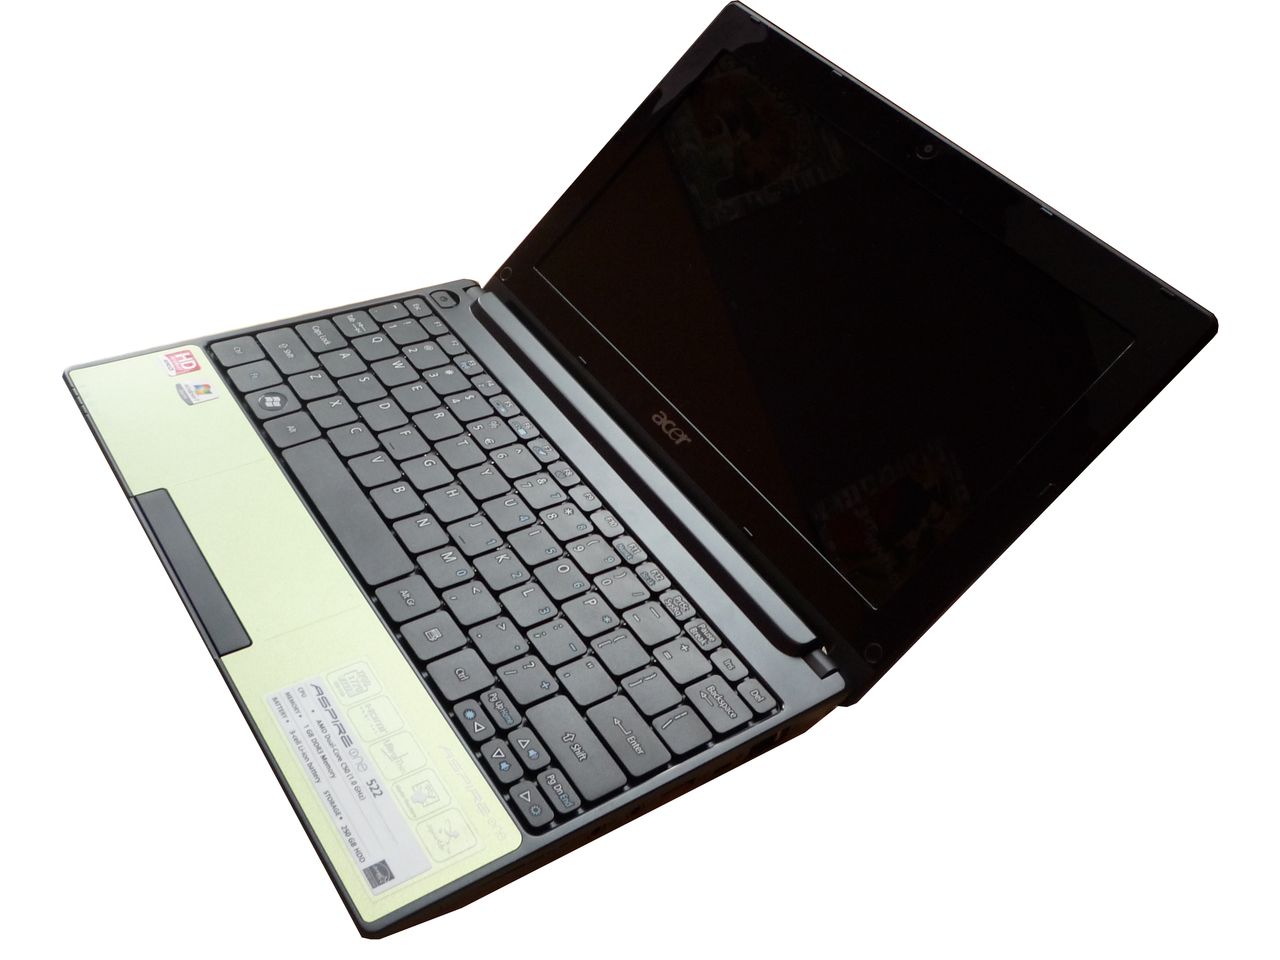 Acer Aspire One 522 - test netbooka HD nowej generacji [część 1]